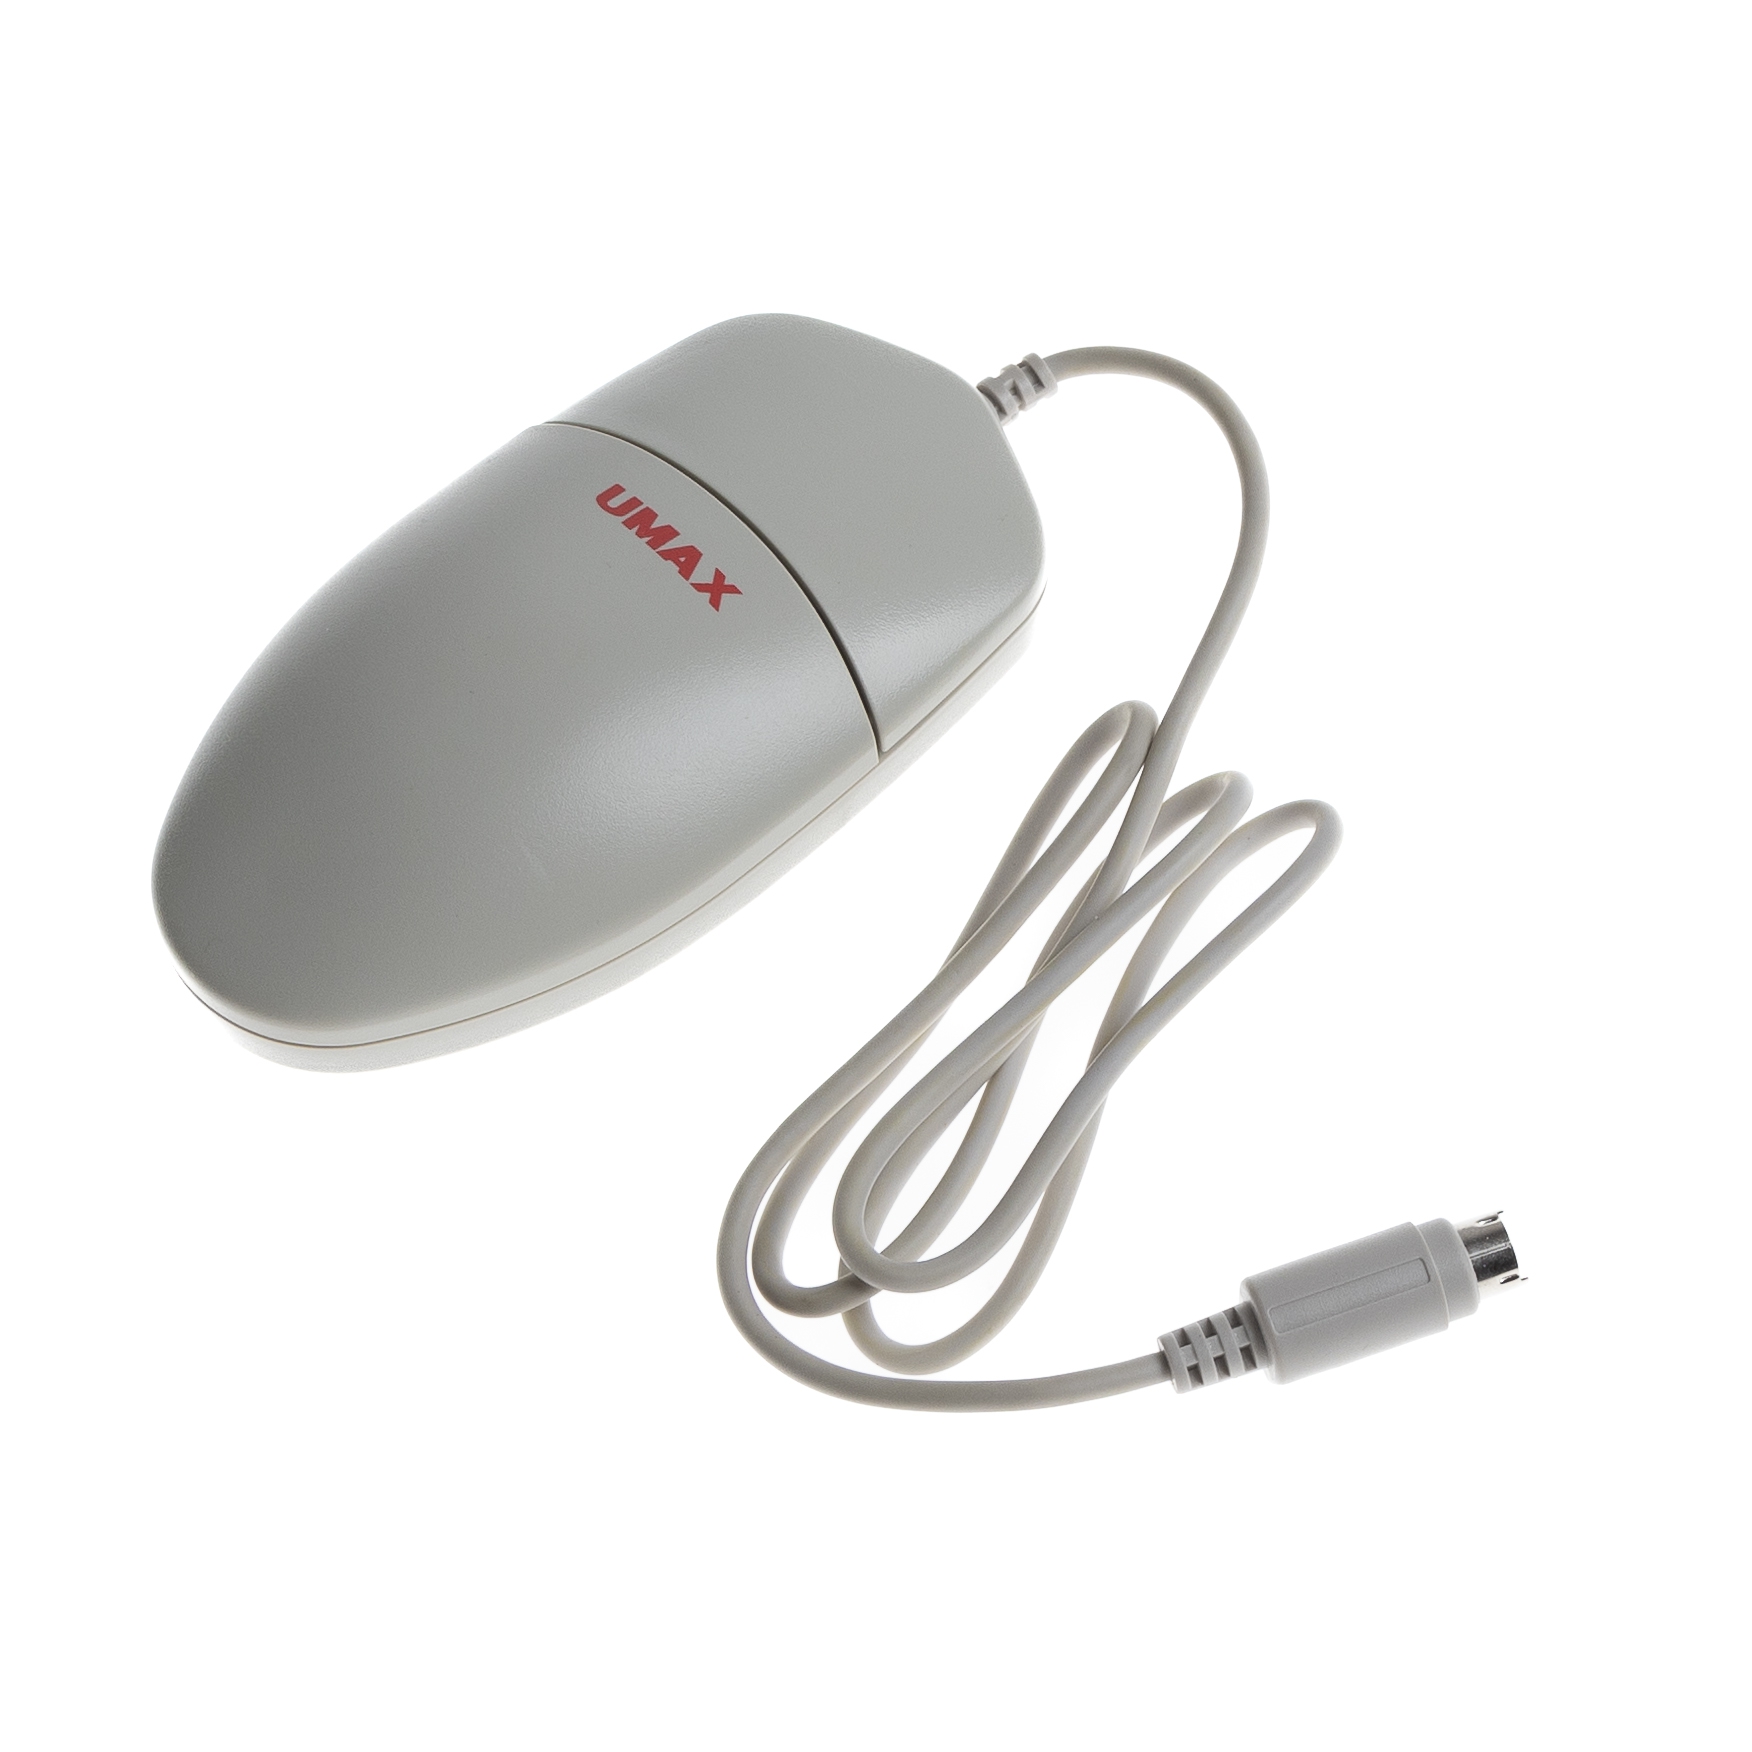 Maus für alte APPLE-Computer, ADB-kompatibel, 1-Tasten-Maus